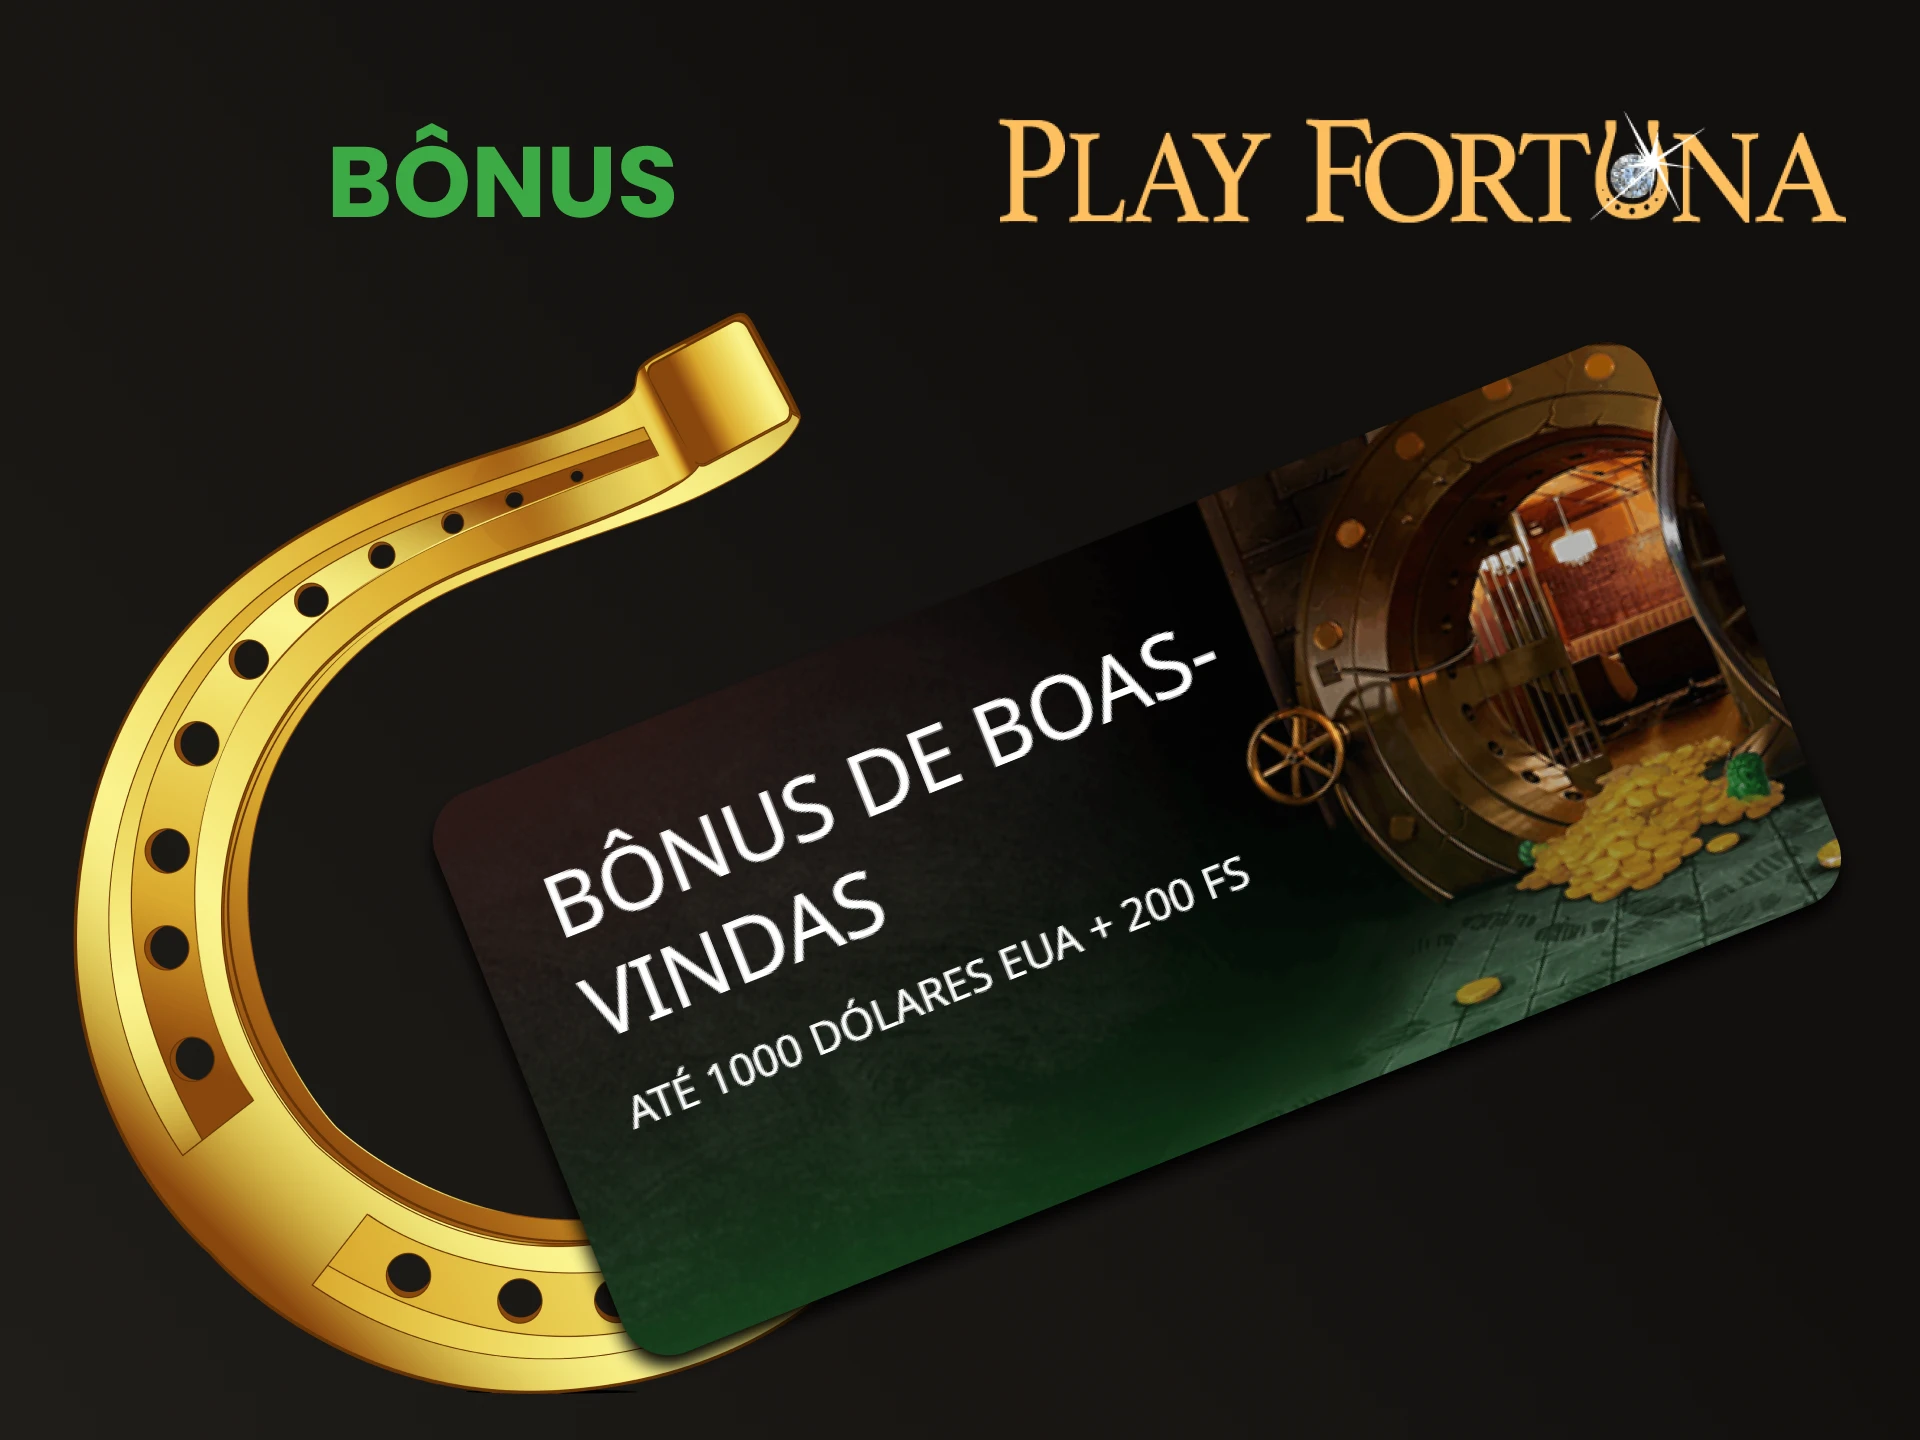 O Play Fortuna oferece um bônus após o registro.